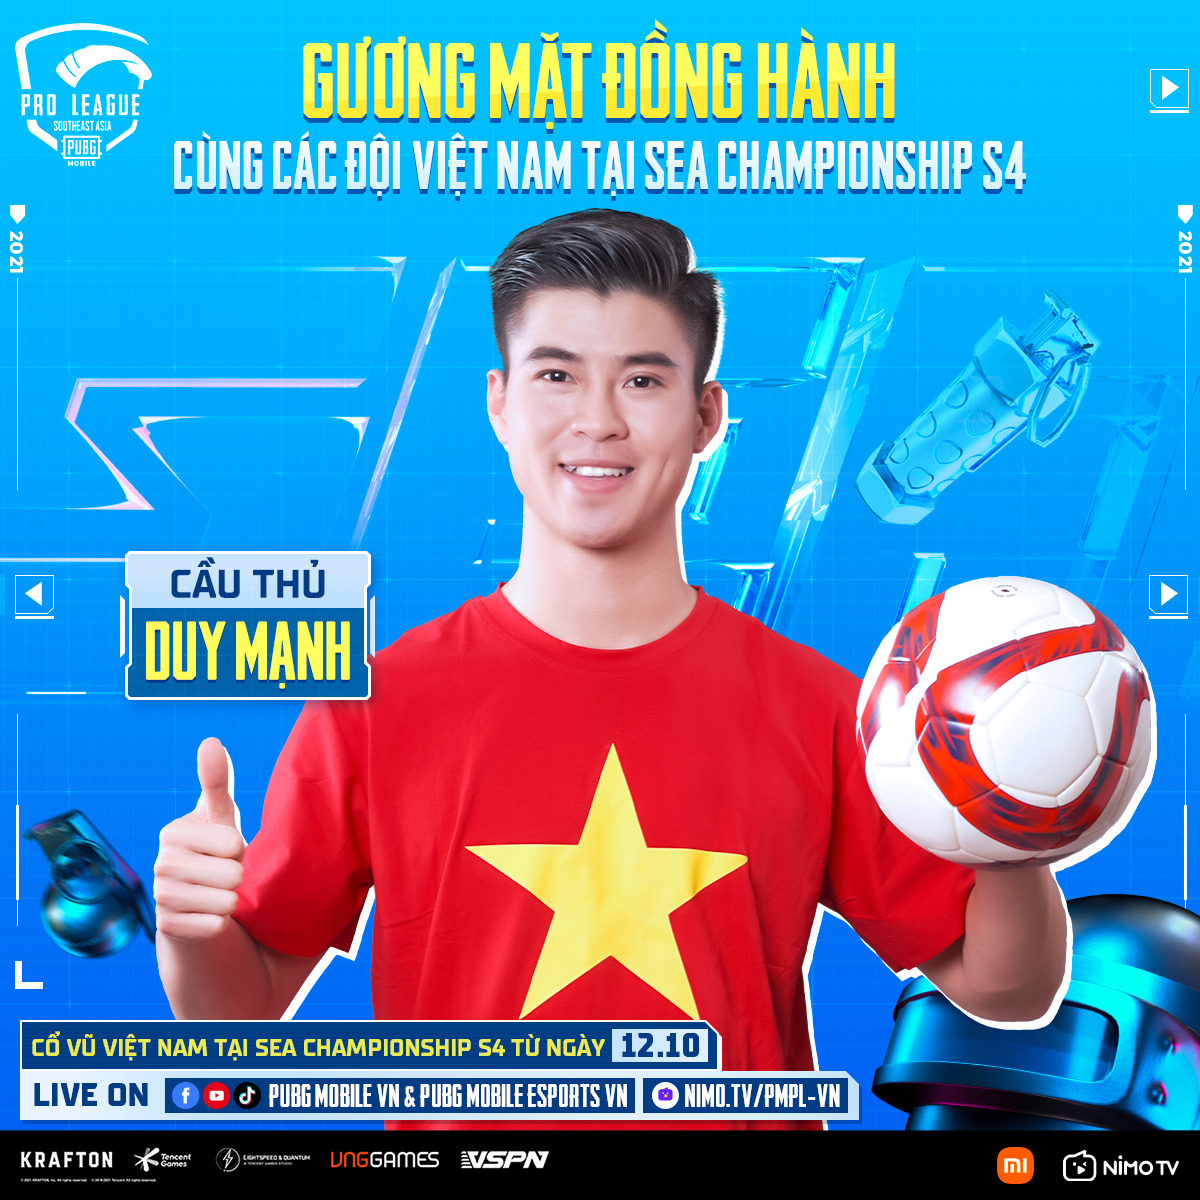 Cầu thủ Đỗ Duy Mạnh đồng hành 4 đội tuyển PUBG Mobile Việt Nam tại SEA Championship S4